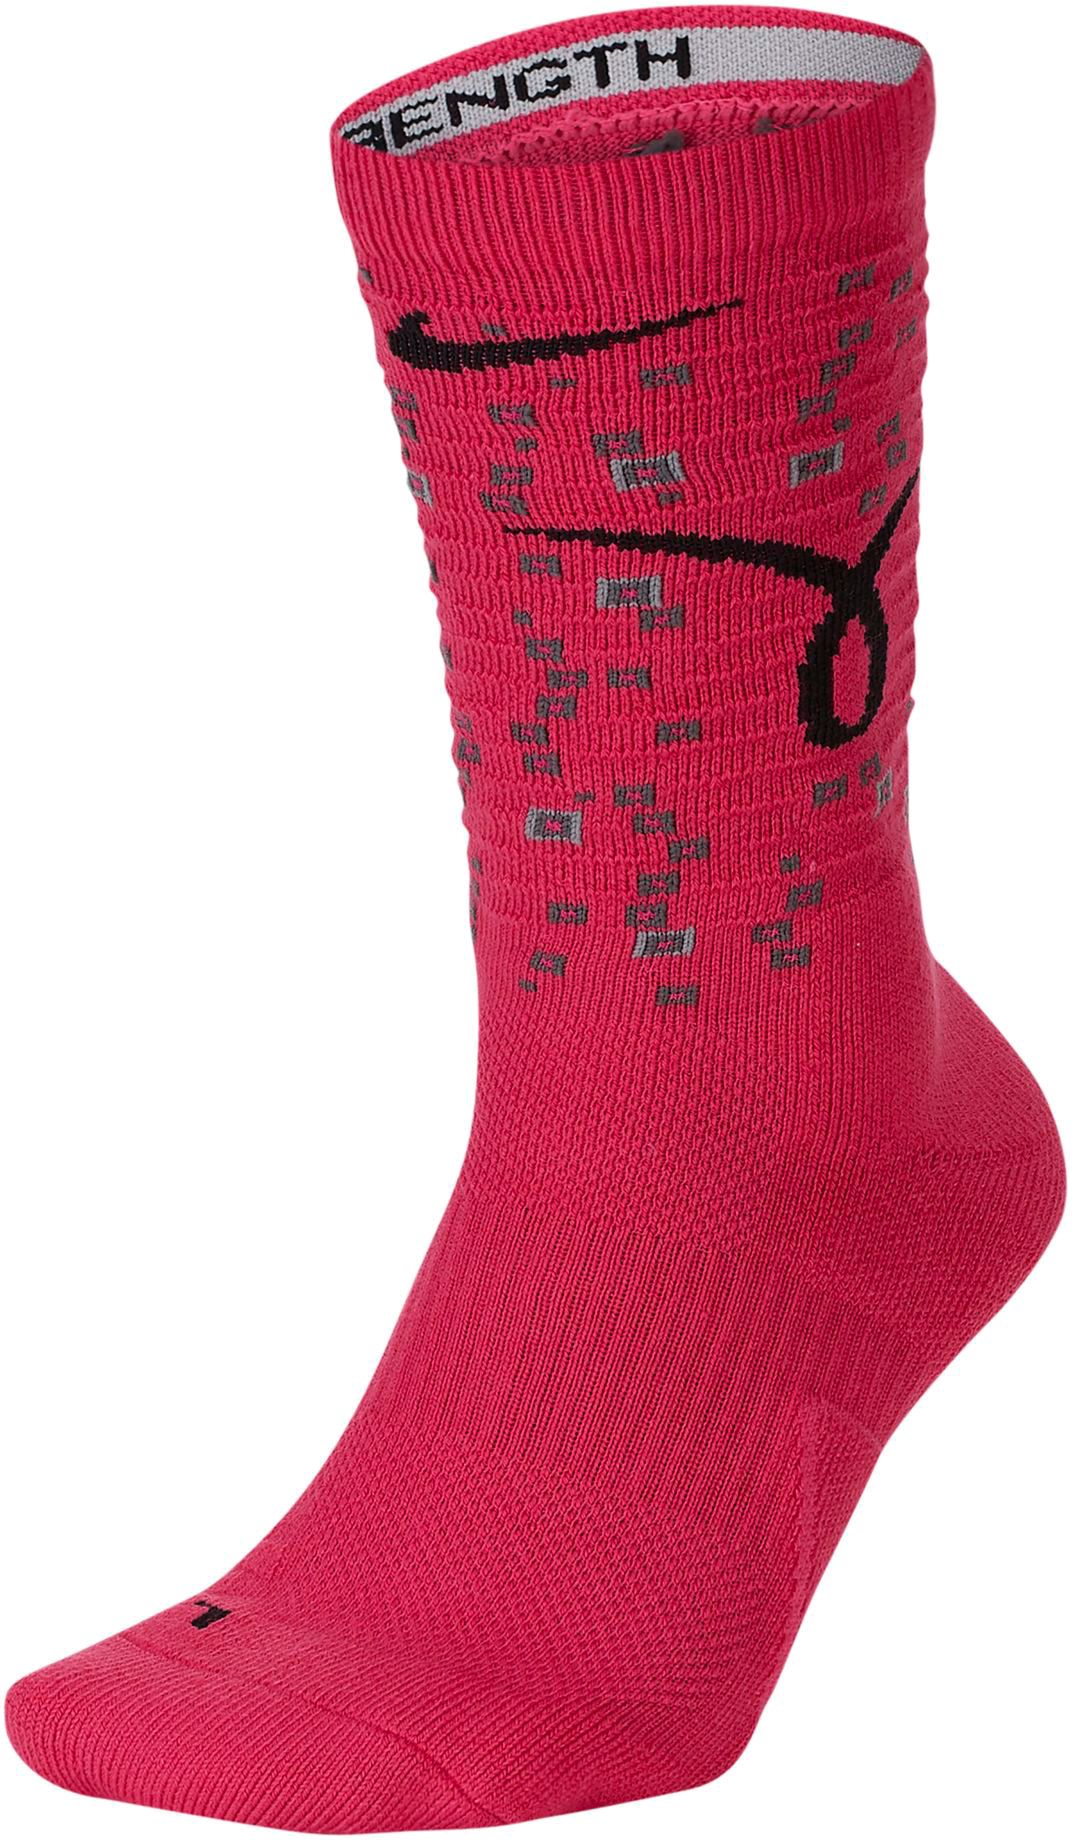 nike elite breast cancer socks